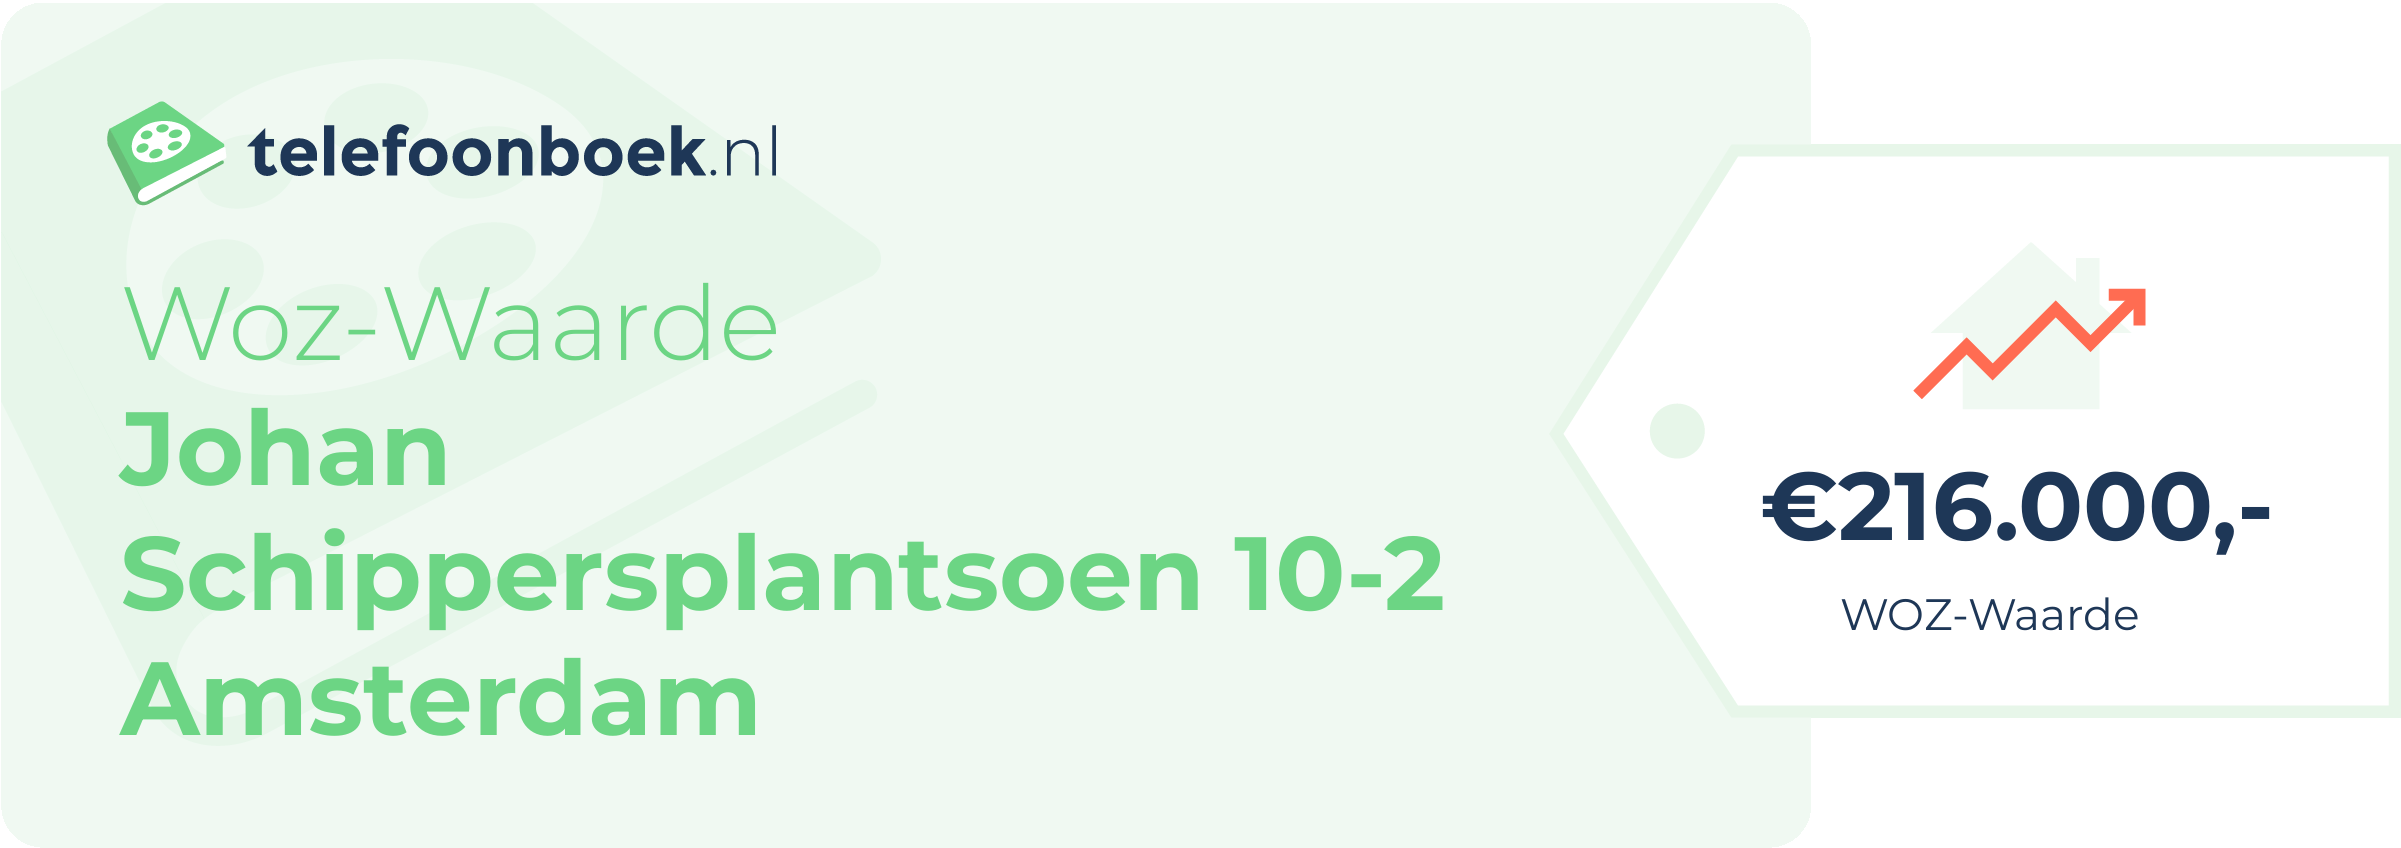 WOZ-waarde Johan Schippersplantsoen 10-2 Amsterdam